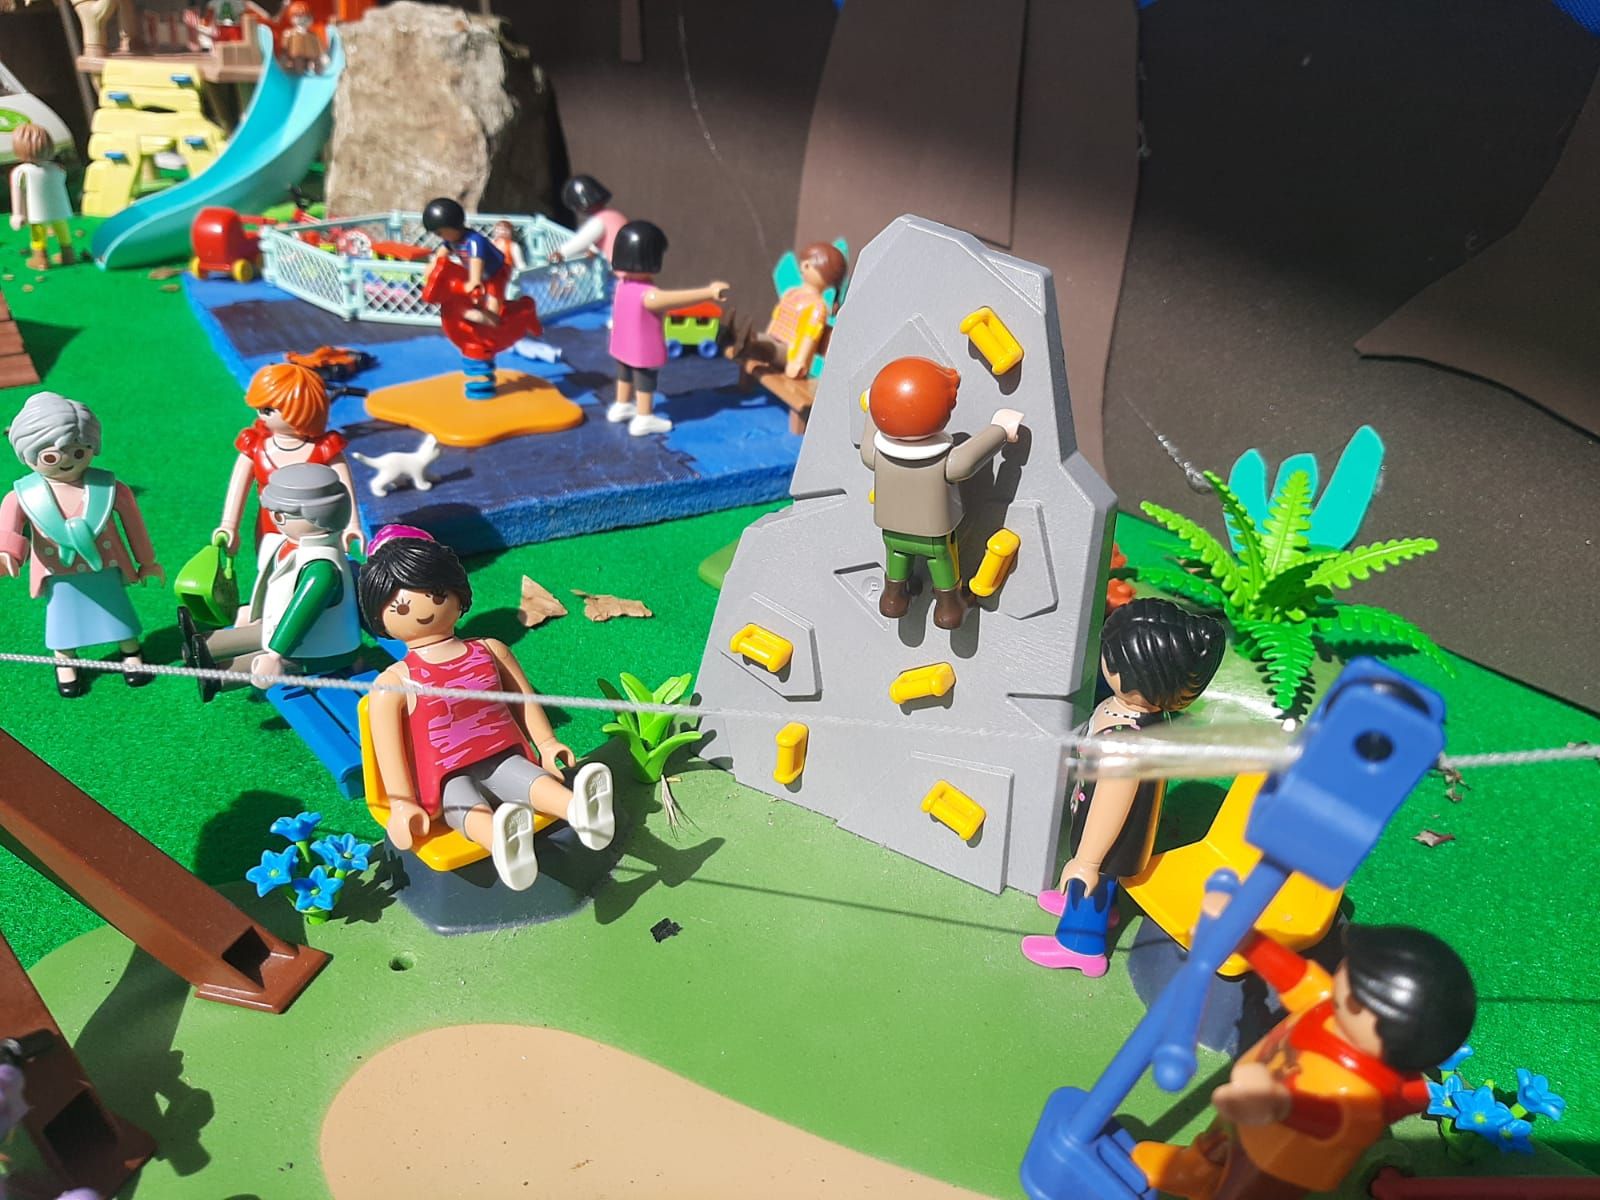 Los Playmobil toman los escaparates del comercio de la Pola